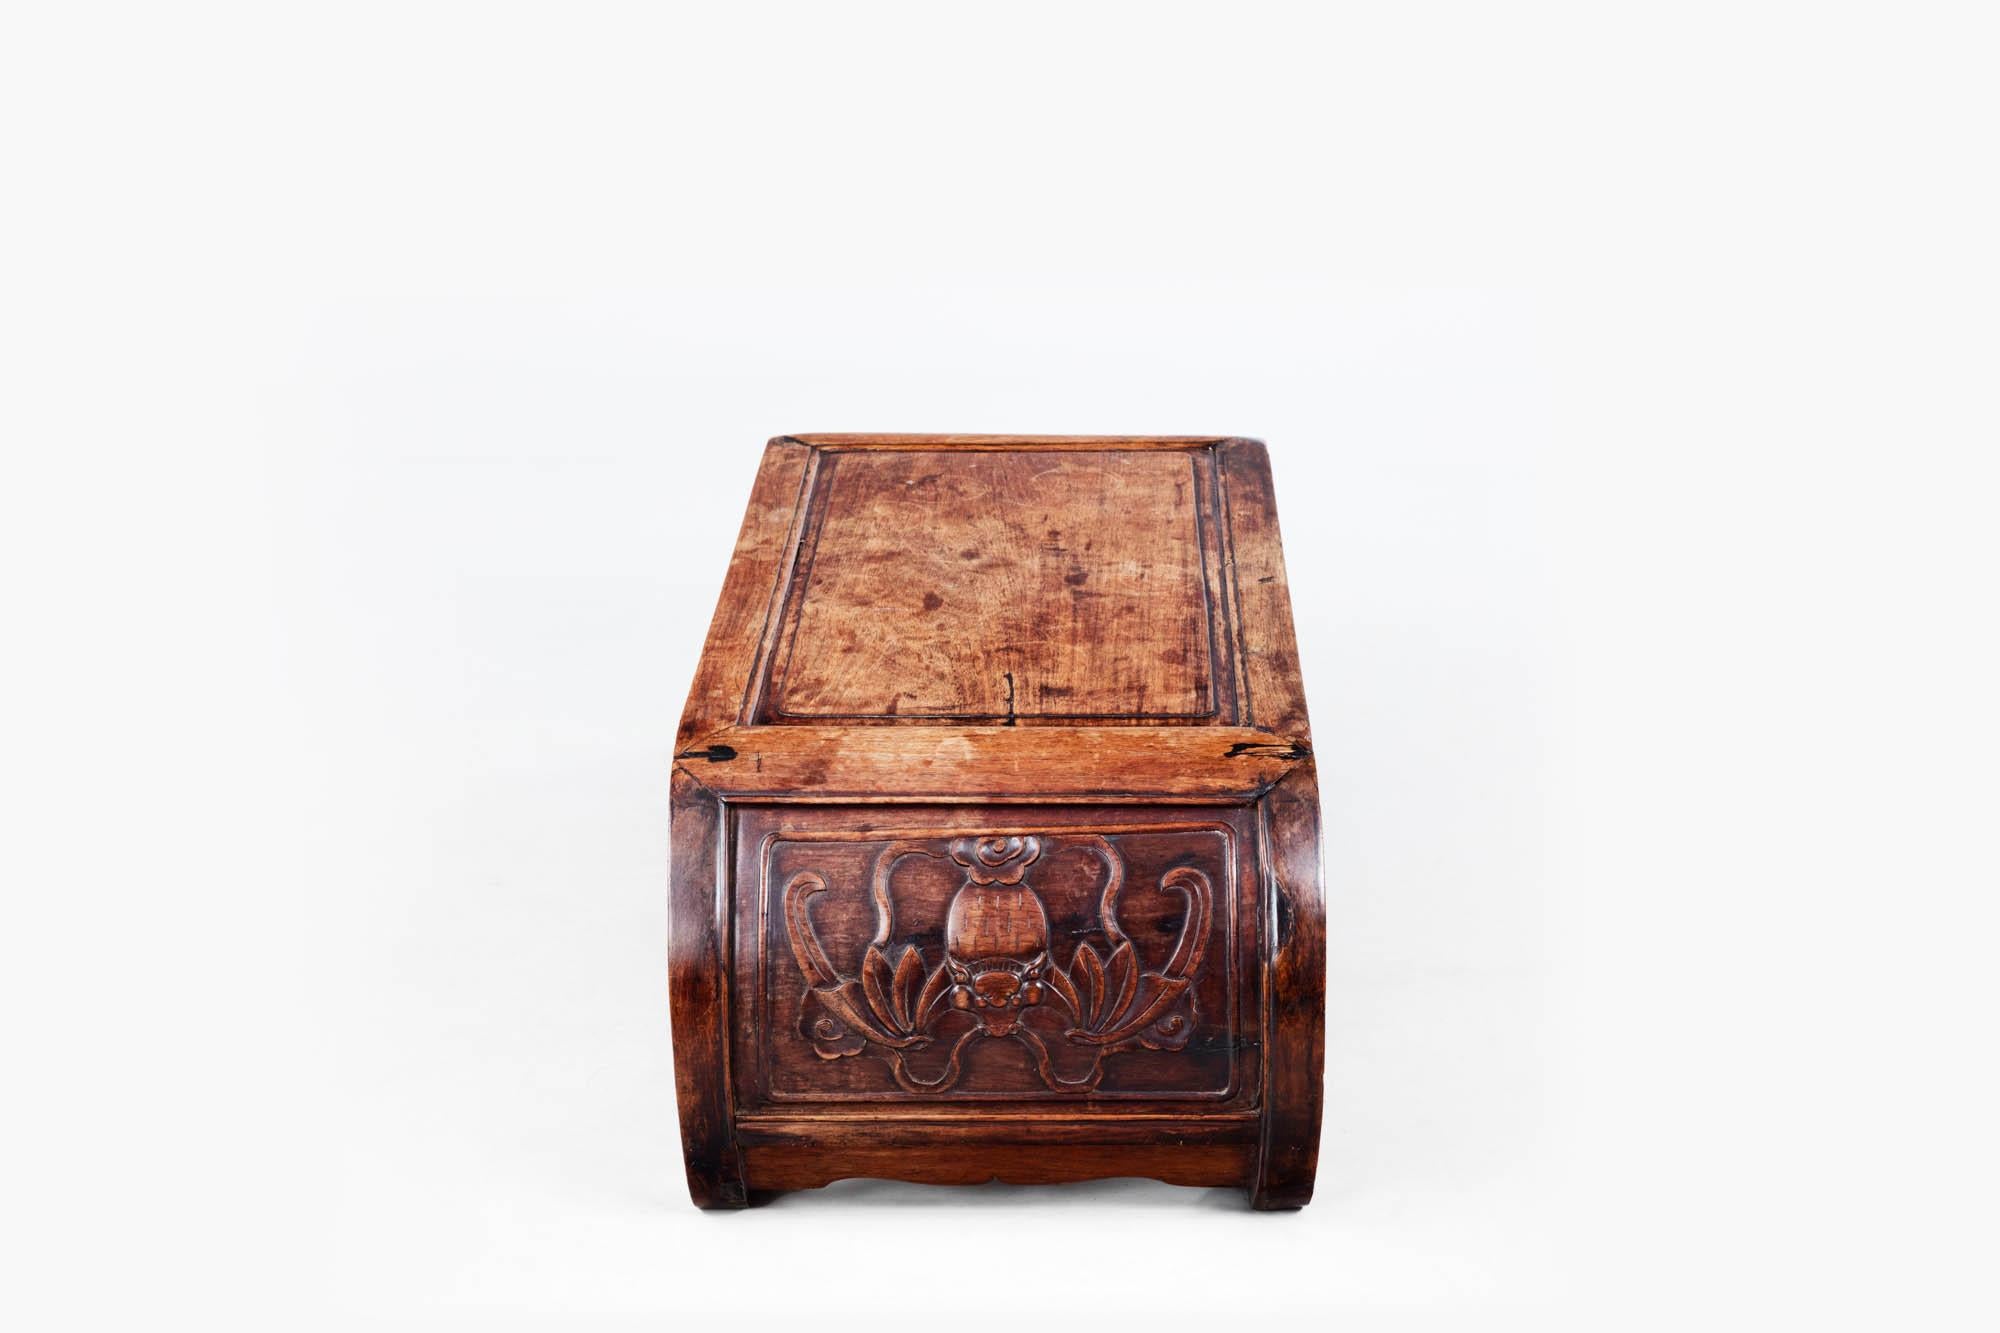 Frühe 19. Jahrhundert Qing-Dynastie Periode chinesischen Hartholz niedrigen Kang Tisch. Der geschwungene Korpus endet in gerollten Füßen, und die Seiten sind mit naturalistischen Tier- und Pflanzensymbolen beschnitzt. Ein abgeschrägter rechteckiger